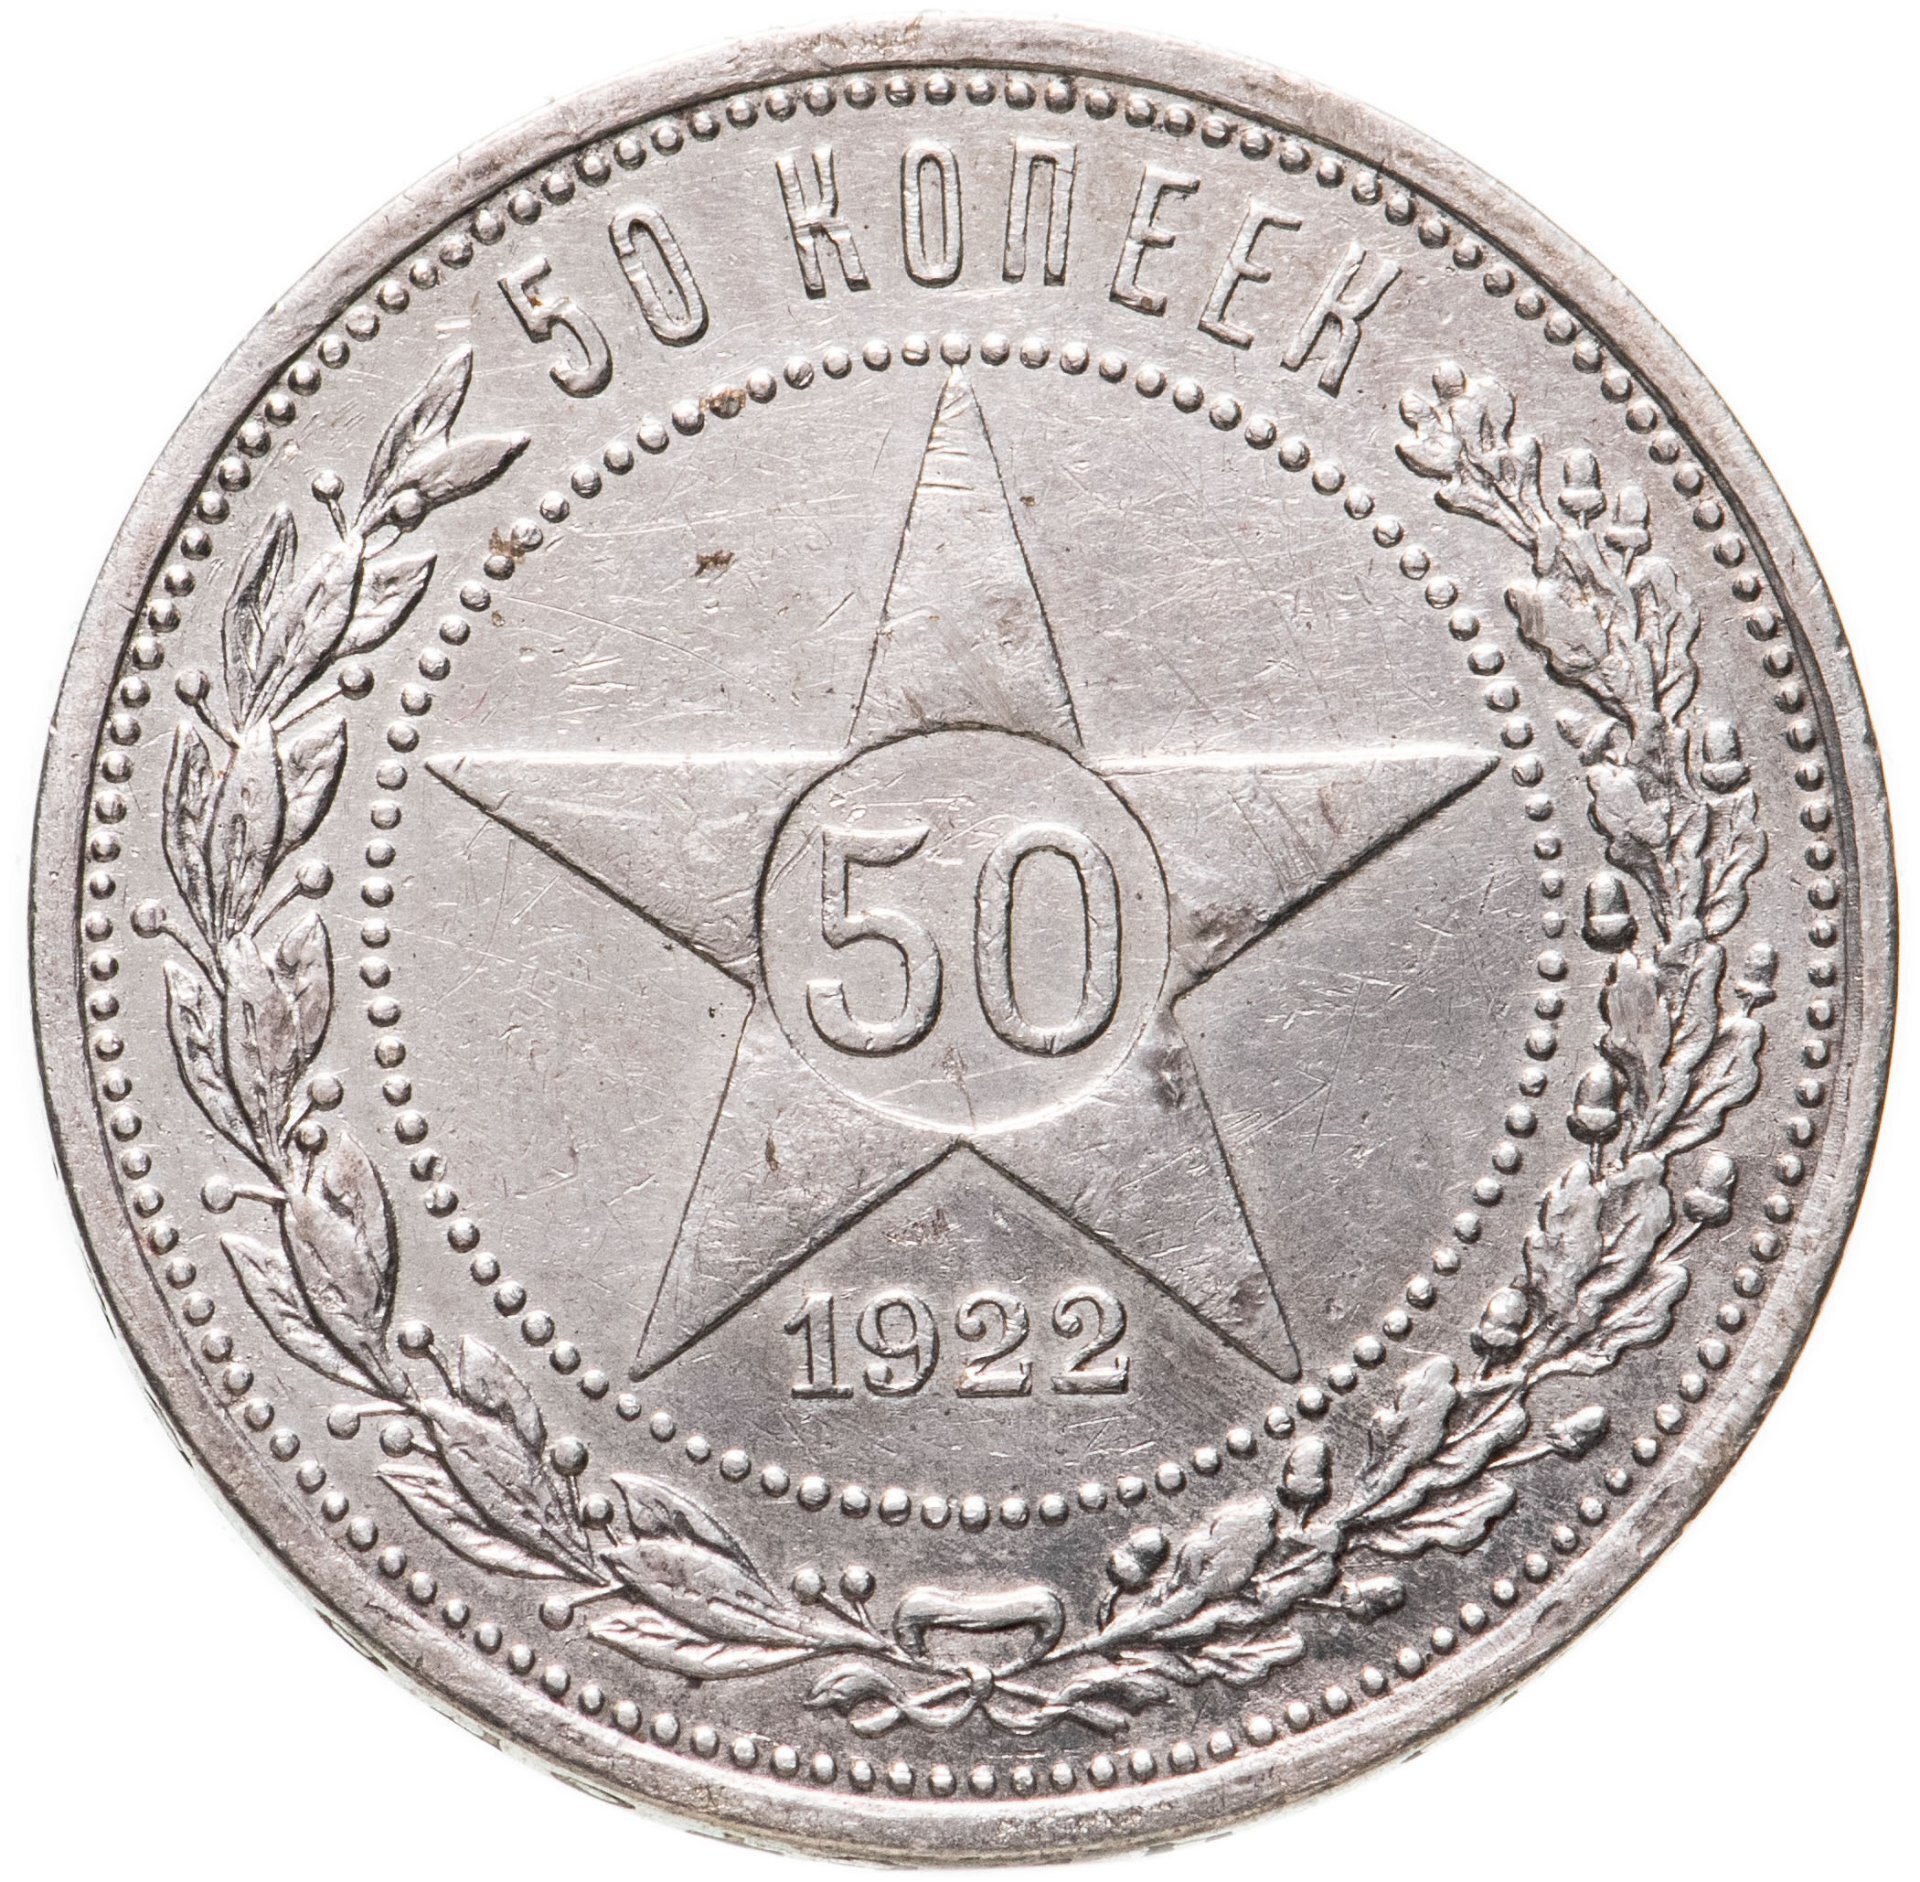 50 копеек 1922 года серебро. 50 Копеек 1922. 50 Копеек серебро 1922г. 50 Копеек 1922 фото. Монета 50 копеек 1922 года серебро стоимость.